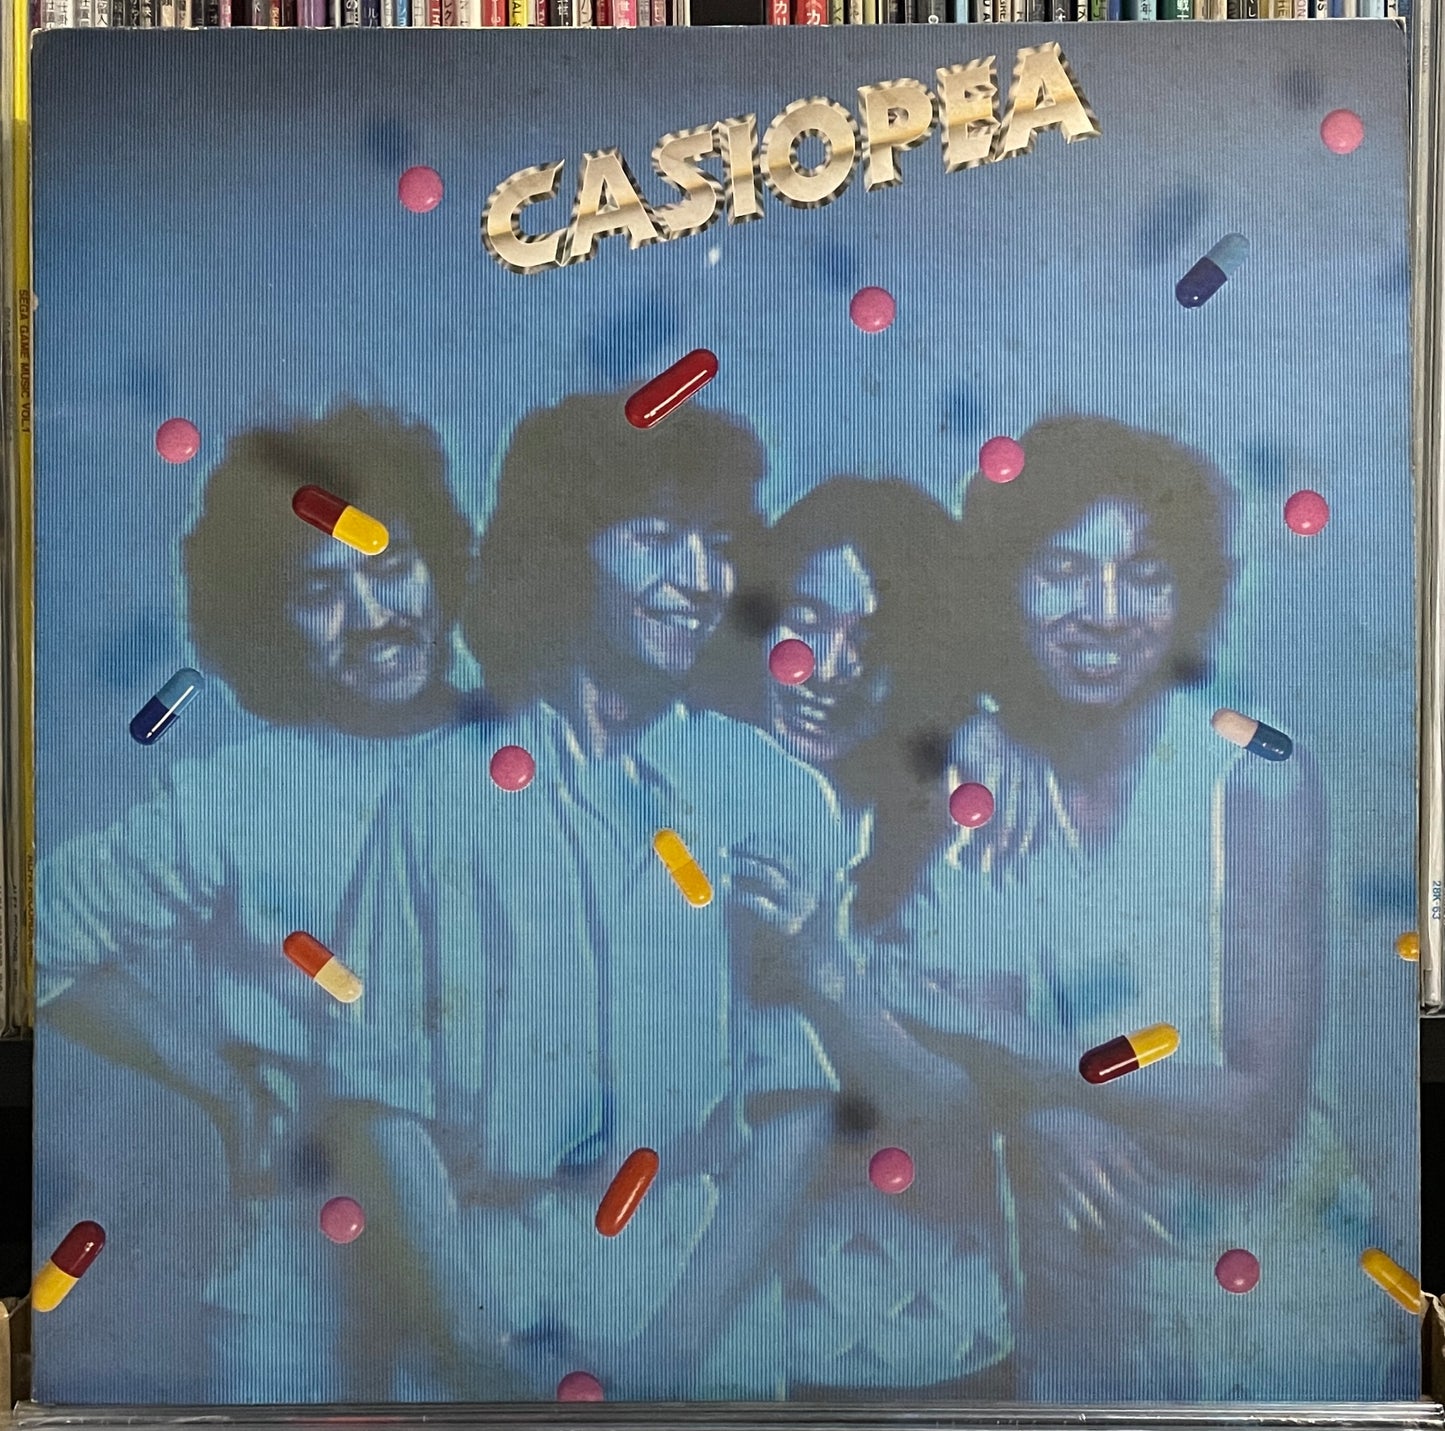 Casiopea “Casiopea” (1979)